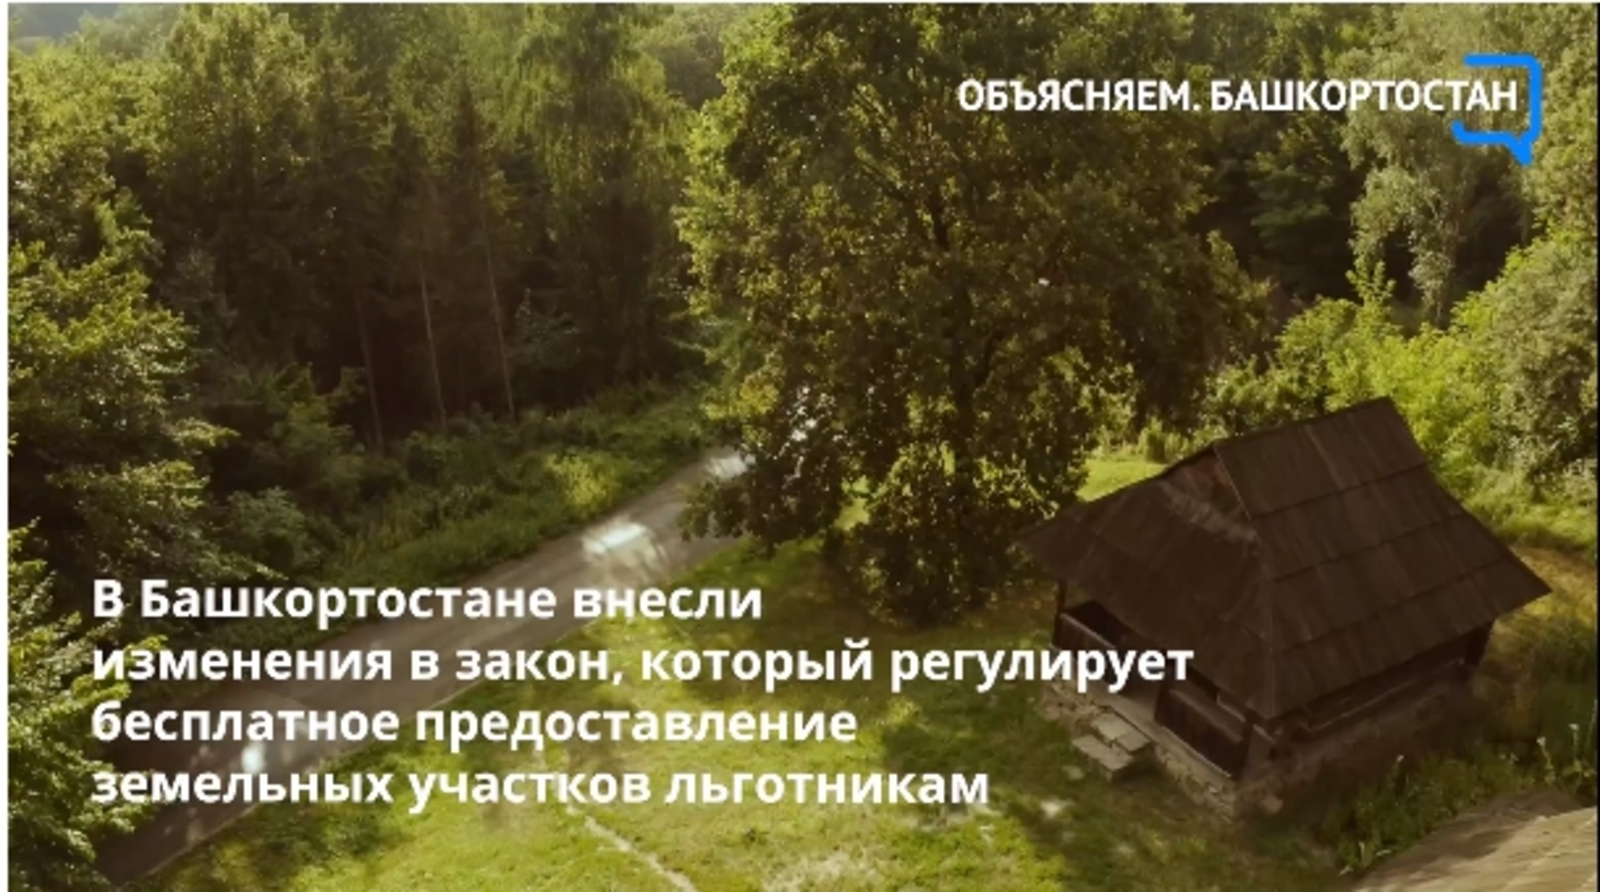 В Башкортостане внесли изменения в закон, который регулирует бесплатное предоставление земельных участков льготникам